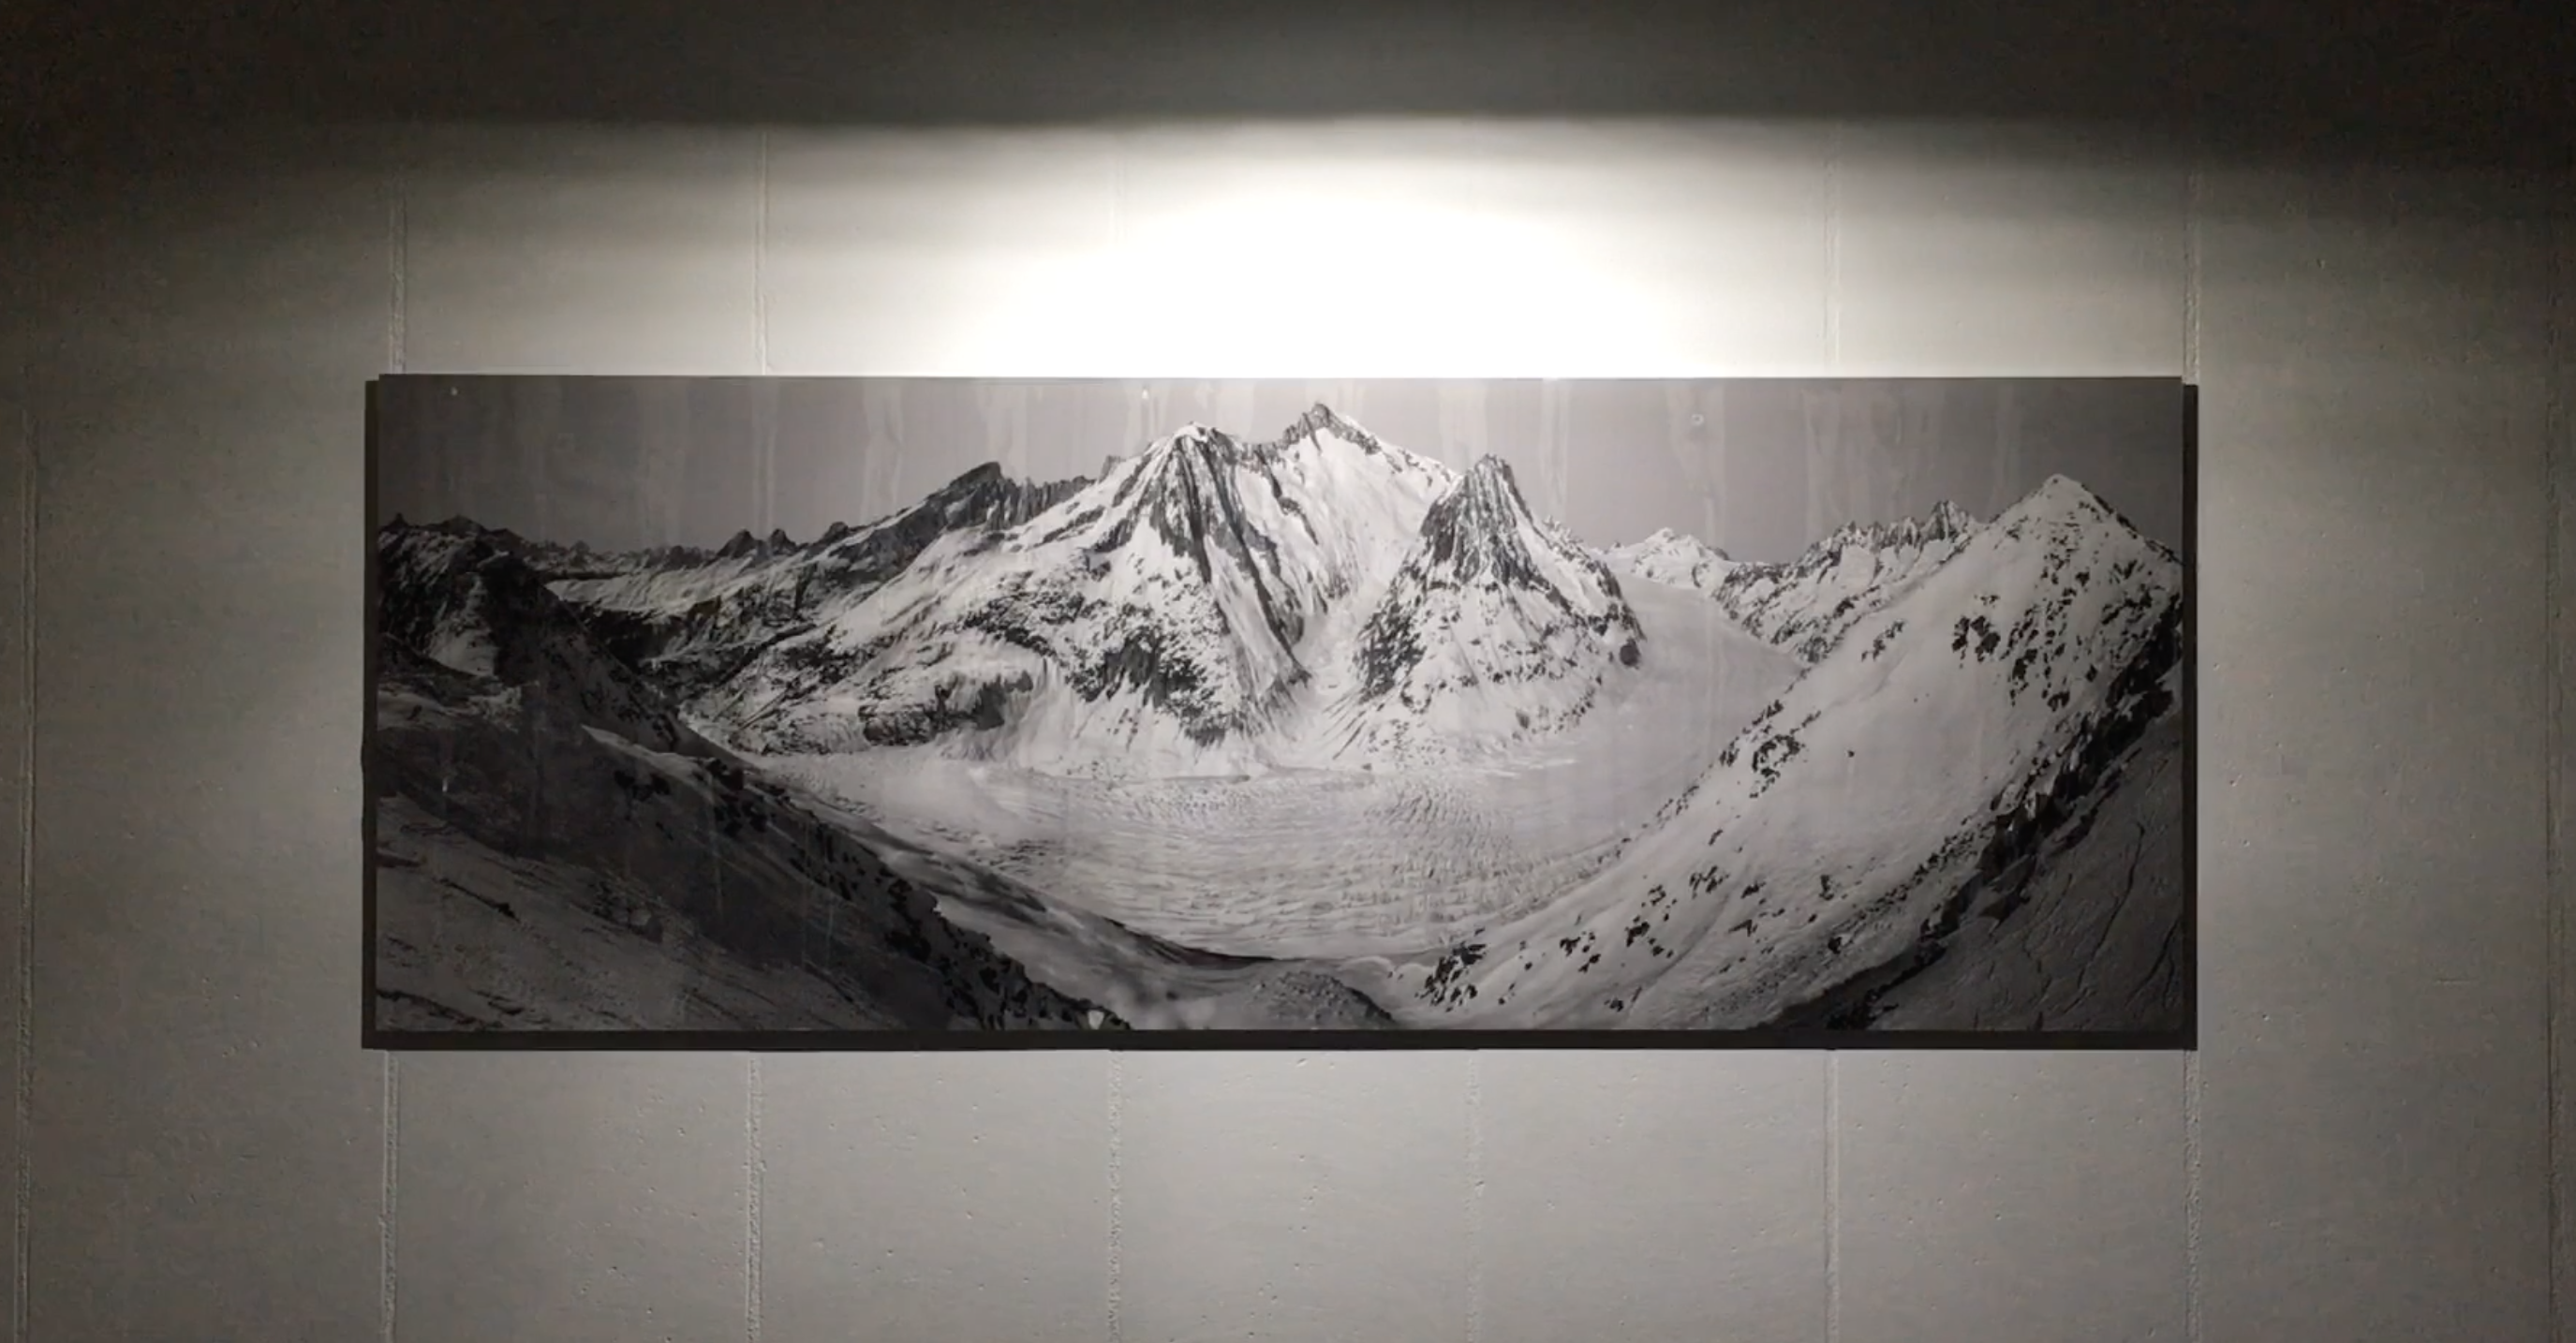 Les montagnes valaisannes à travers les yeux d’un artiste chinois